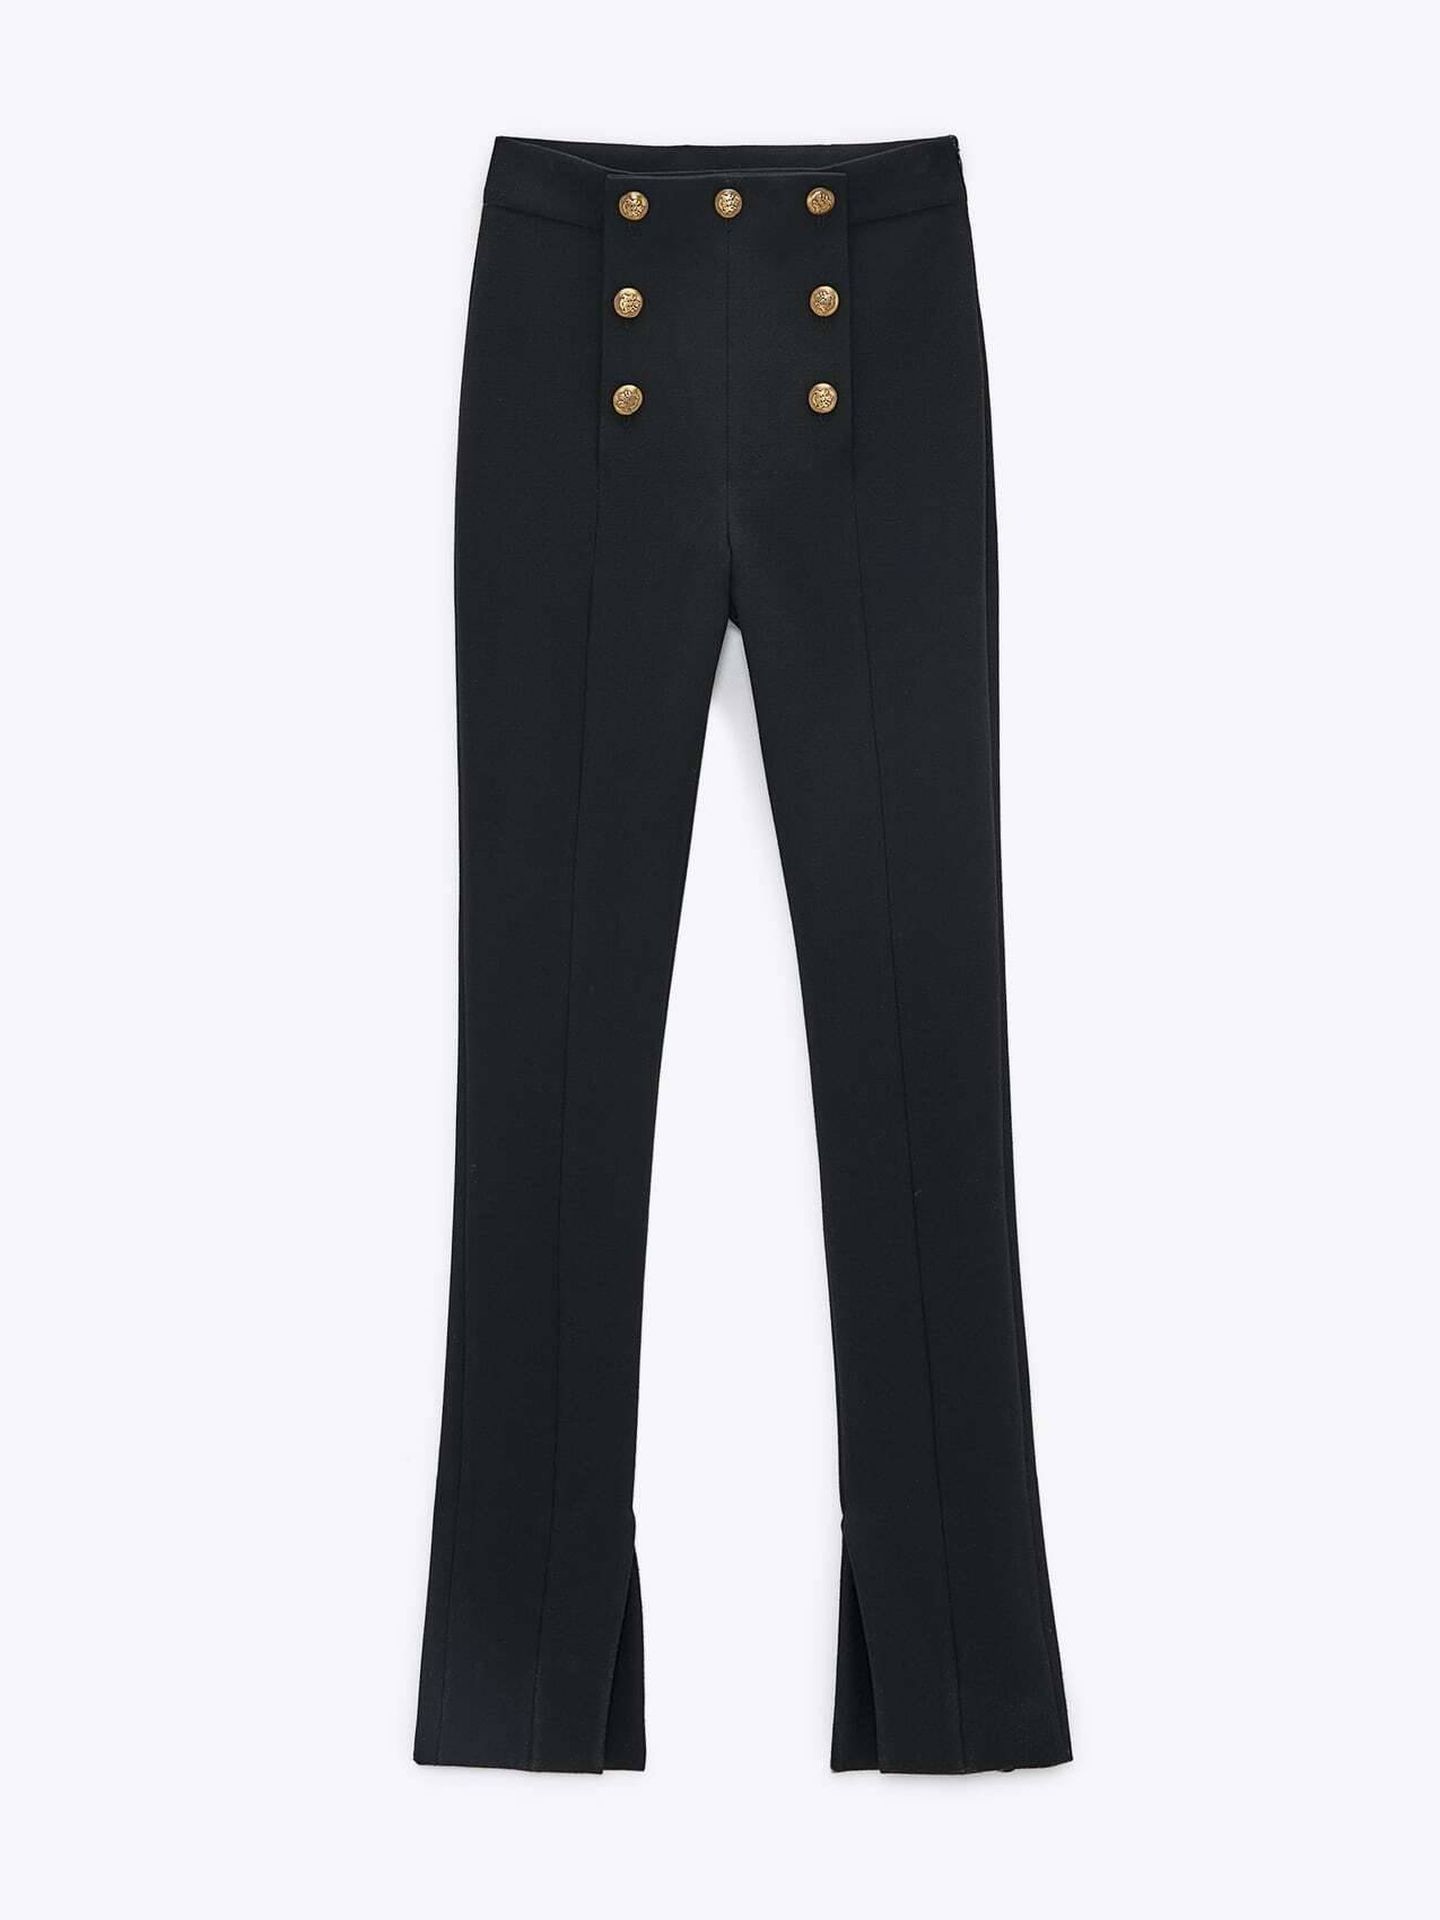 Los nuevos leggings de Zara. (Cortesía)